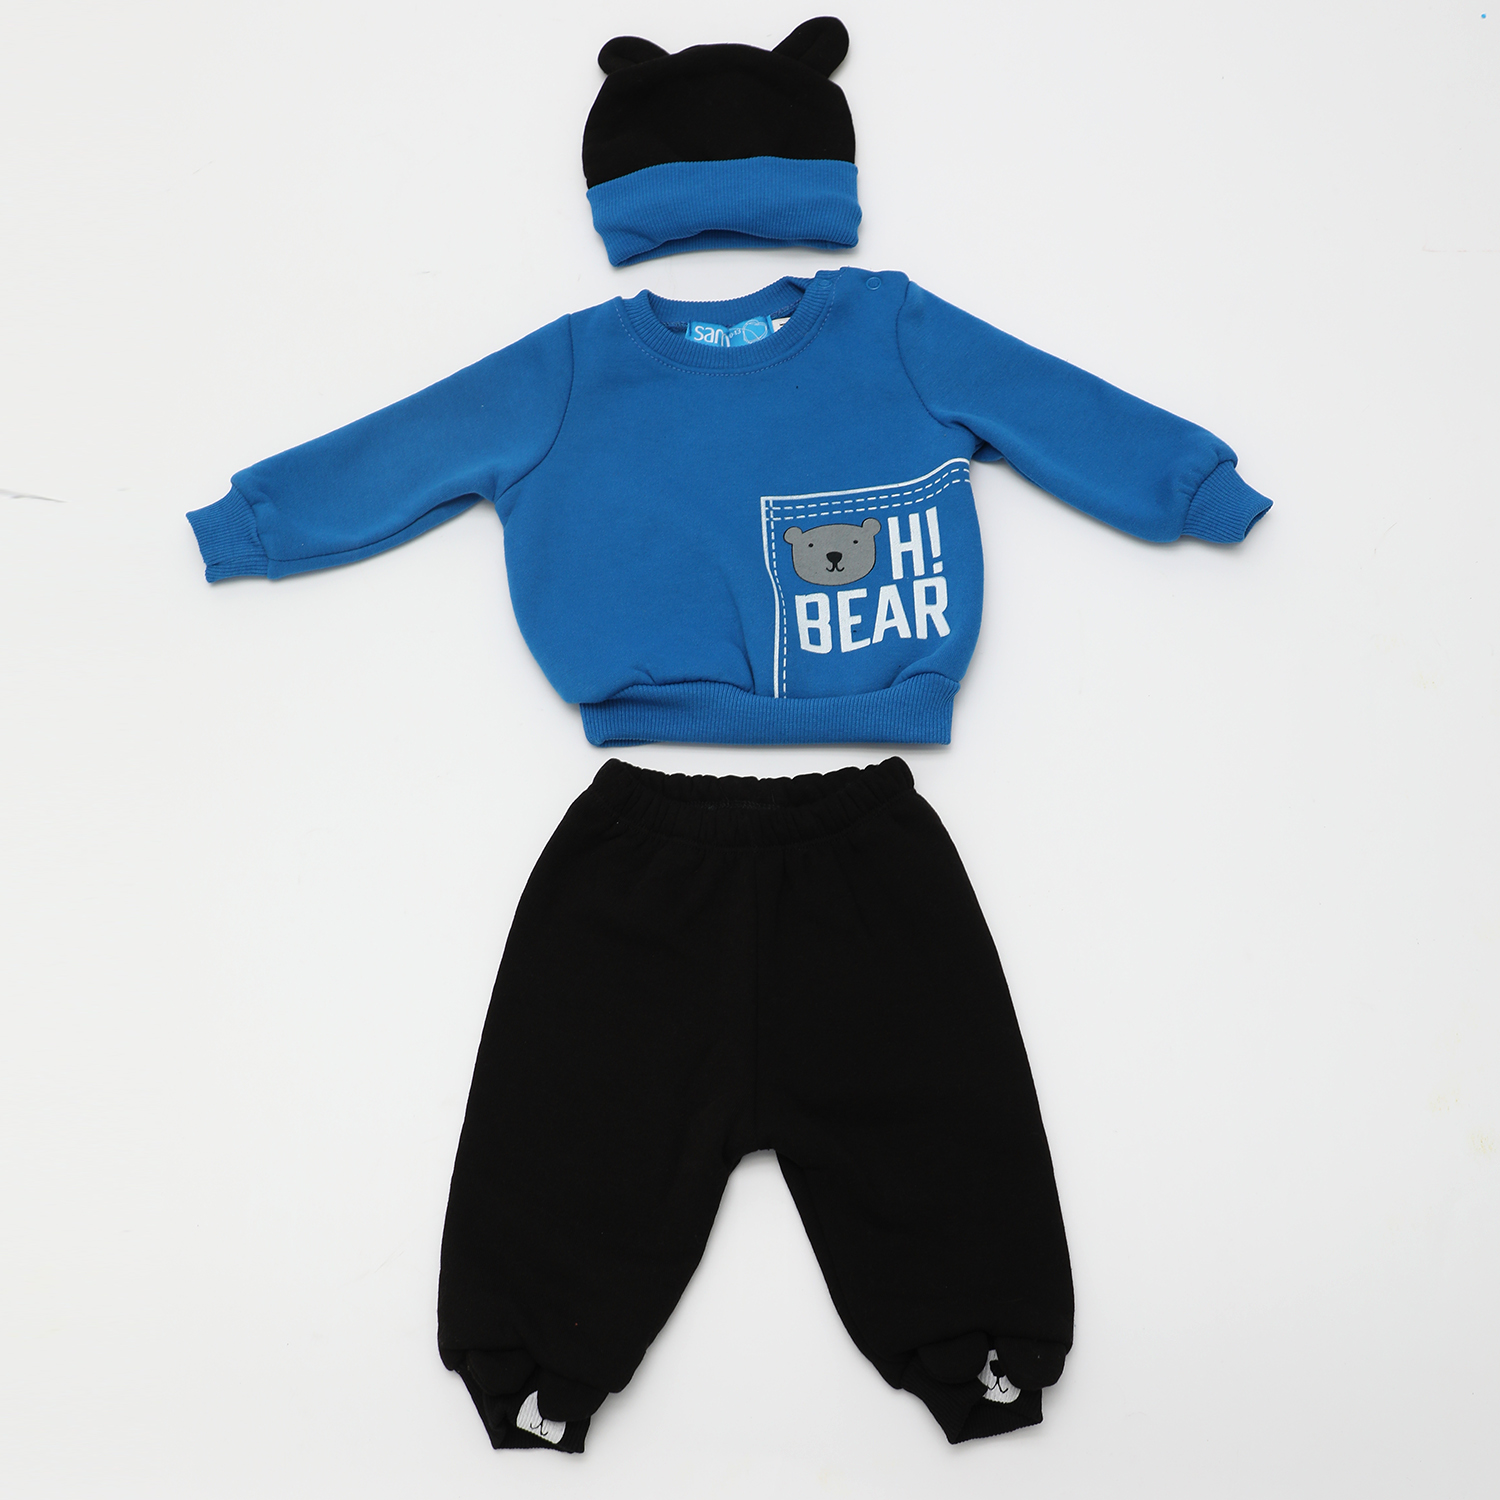 Παιδικά/Baby/Ρούχα/Σετ SAM 0-13 - Βρεφικό σετ φόρμας με σκουφάκι SAM 0-13 HI BEAR μπλε